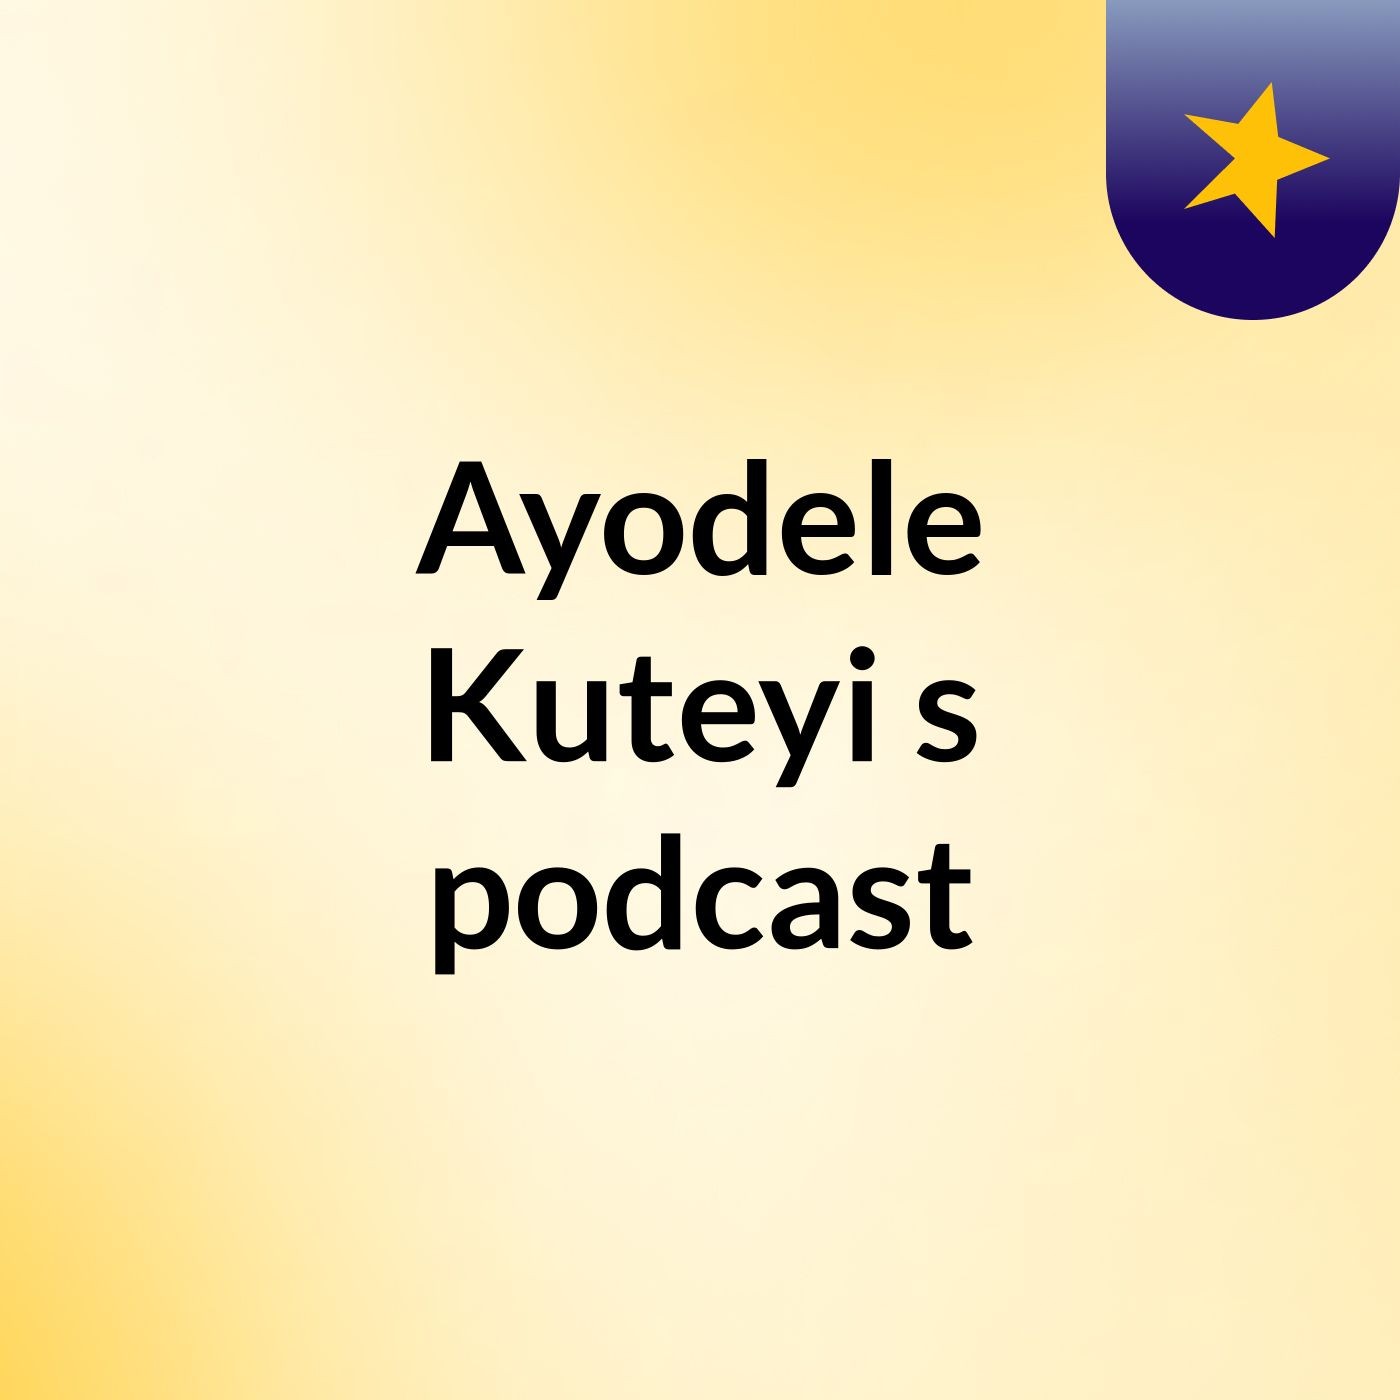 Episode 36 - Ayodele Kuteyi's podcast